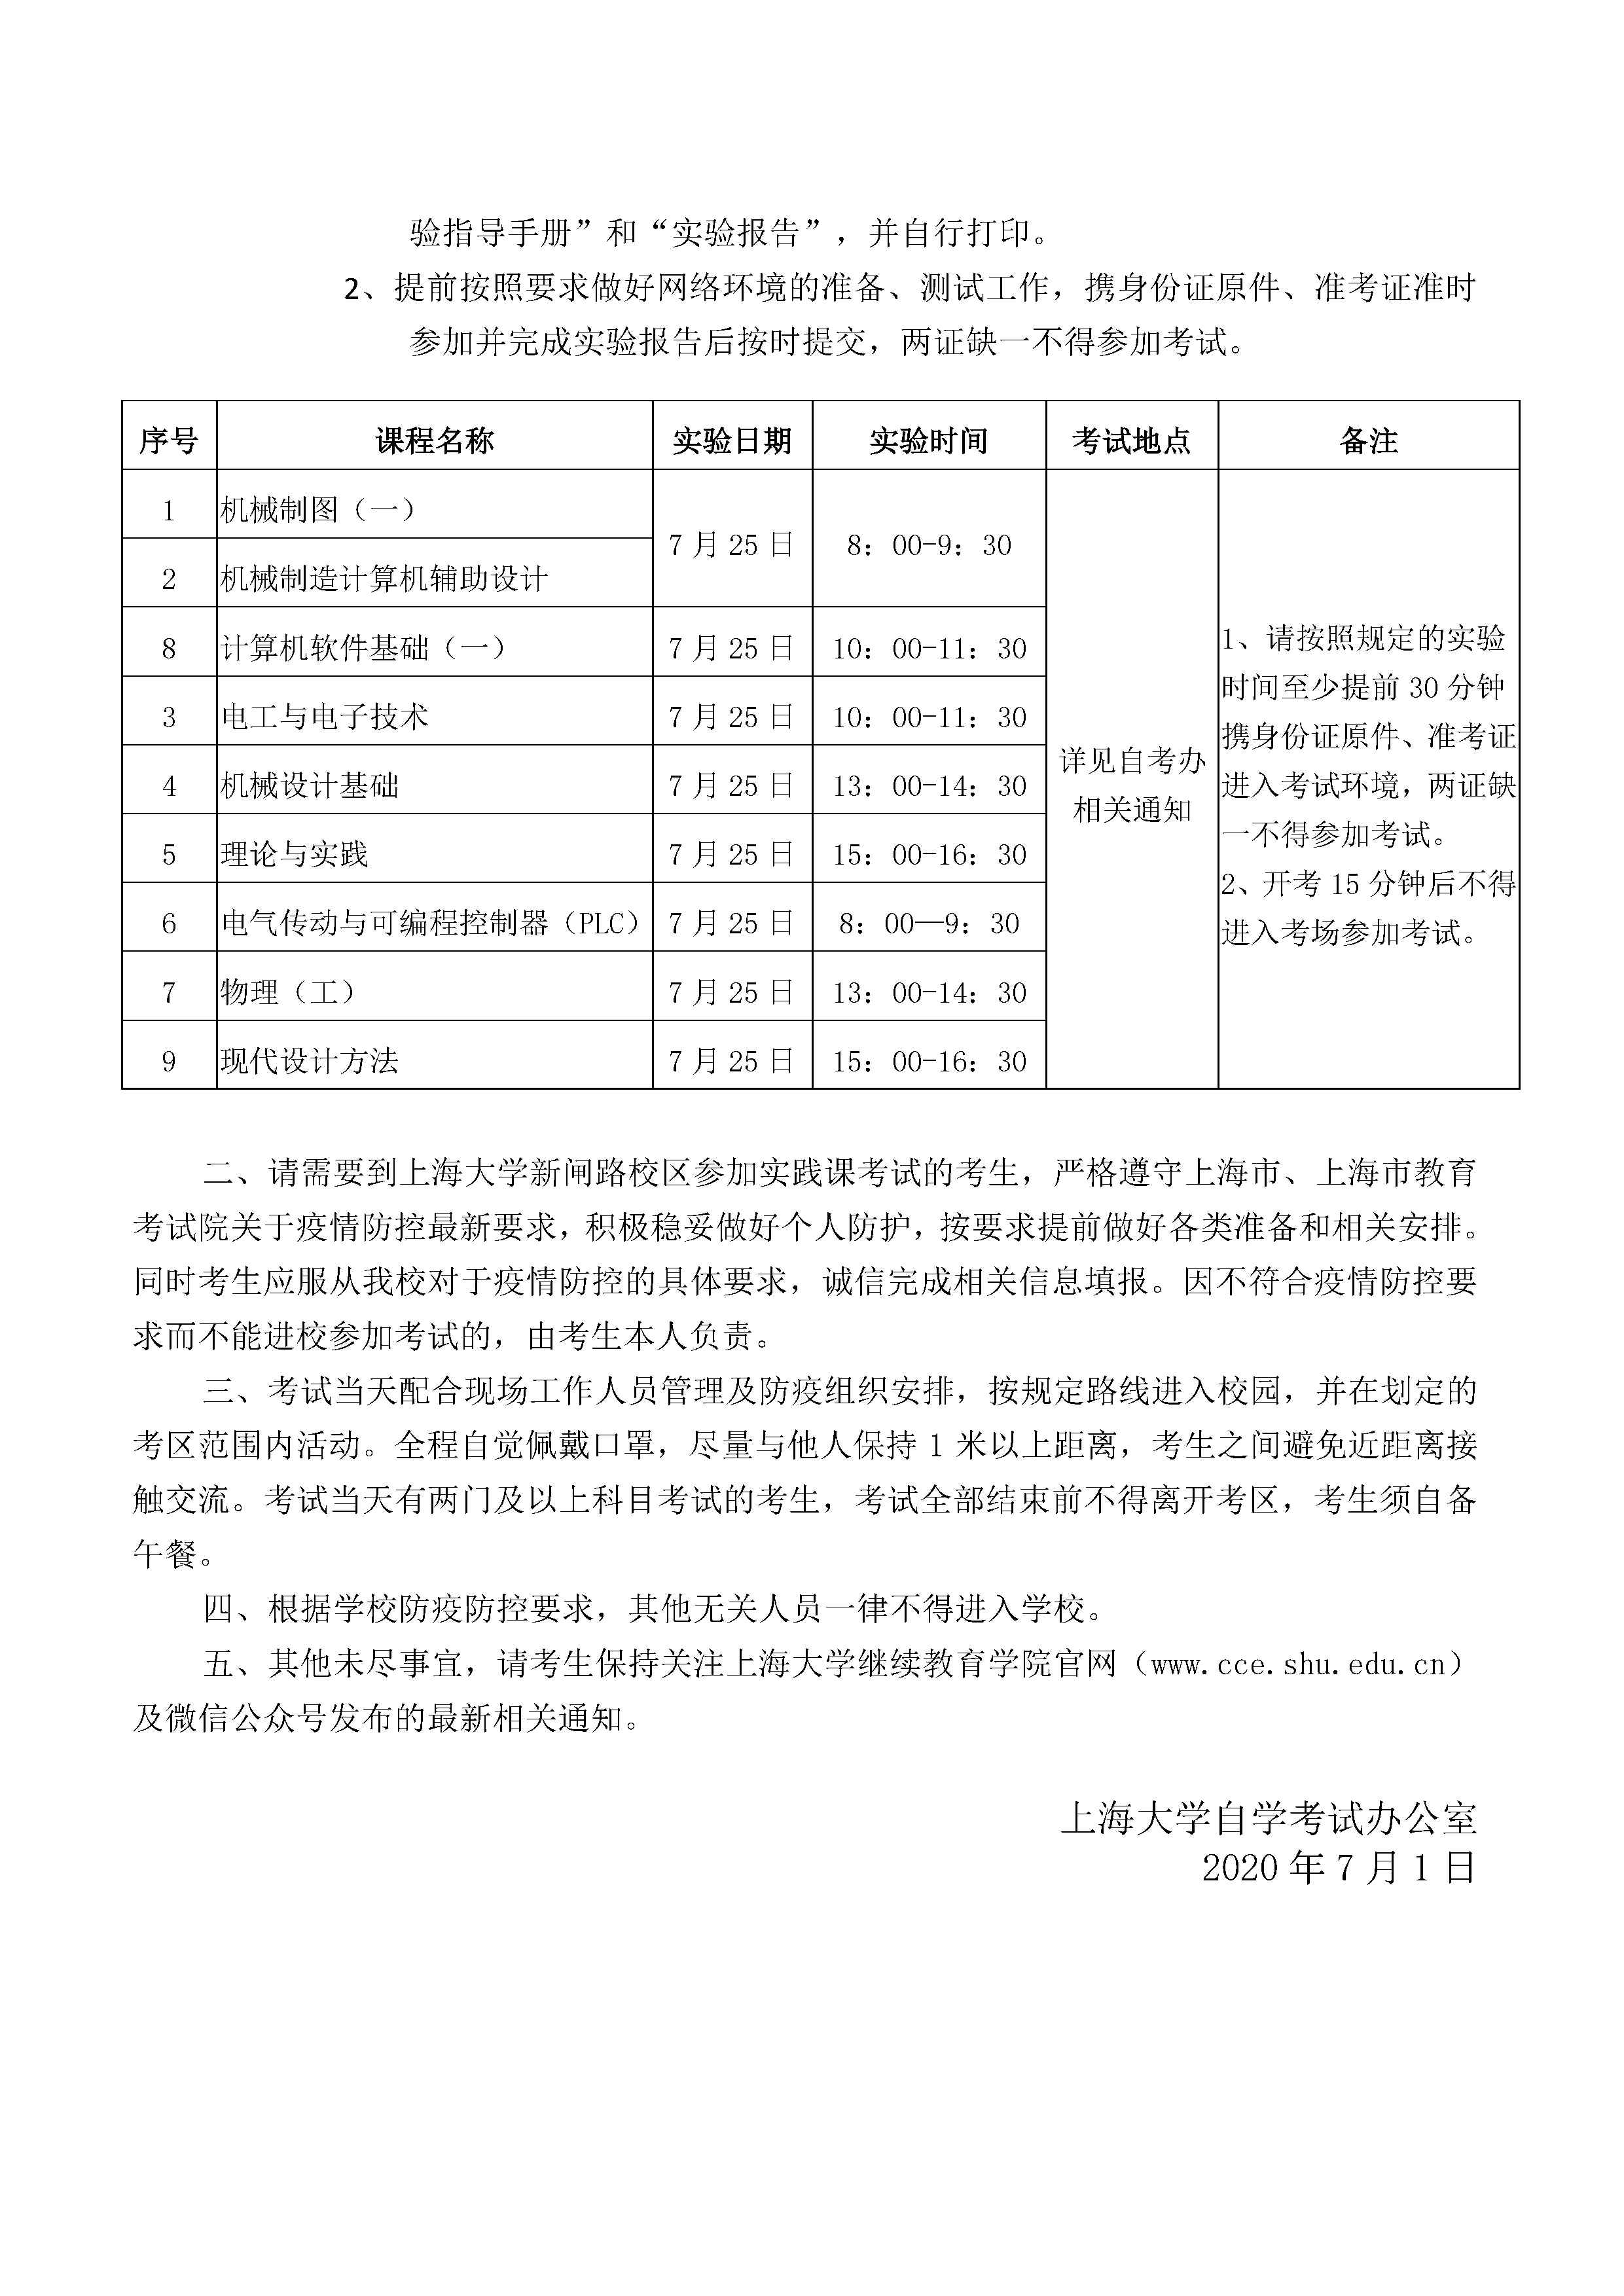 上海大学2020年上半年自考实践课考试的通知